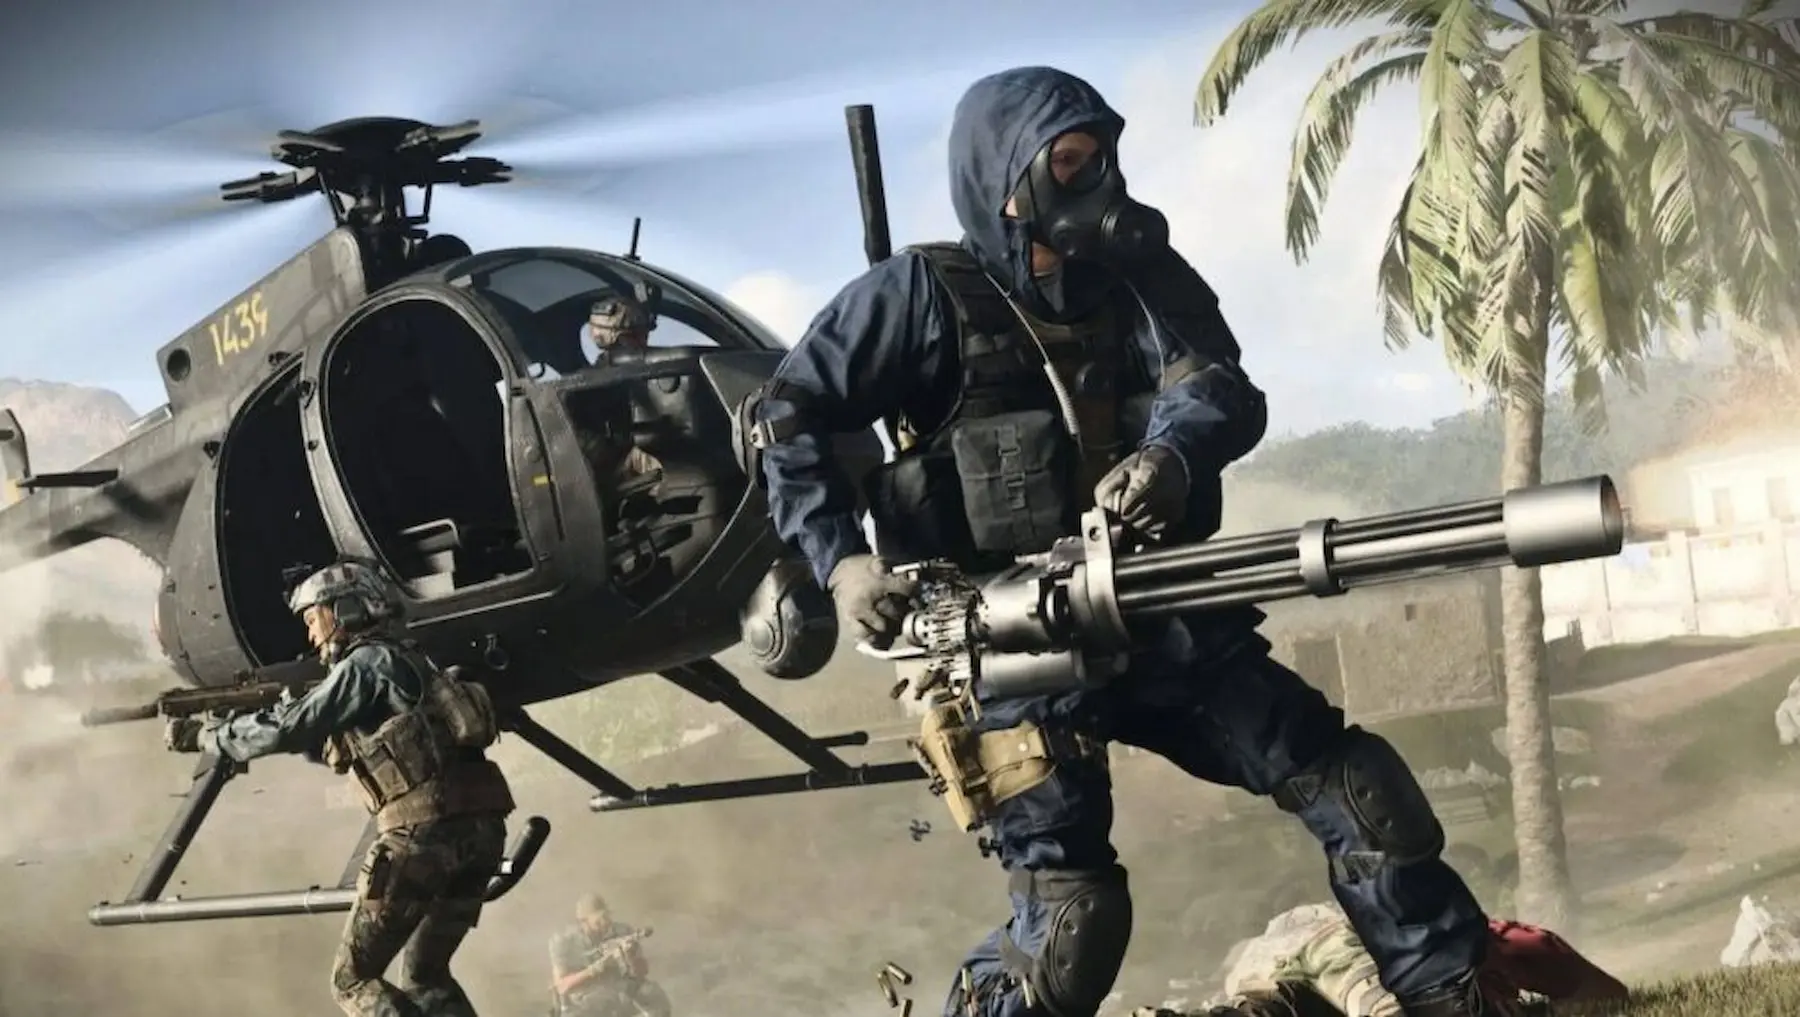 Call of Duty: Vanguard - Requisitos Oficiales de PC; Detalles y